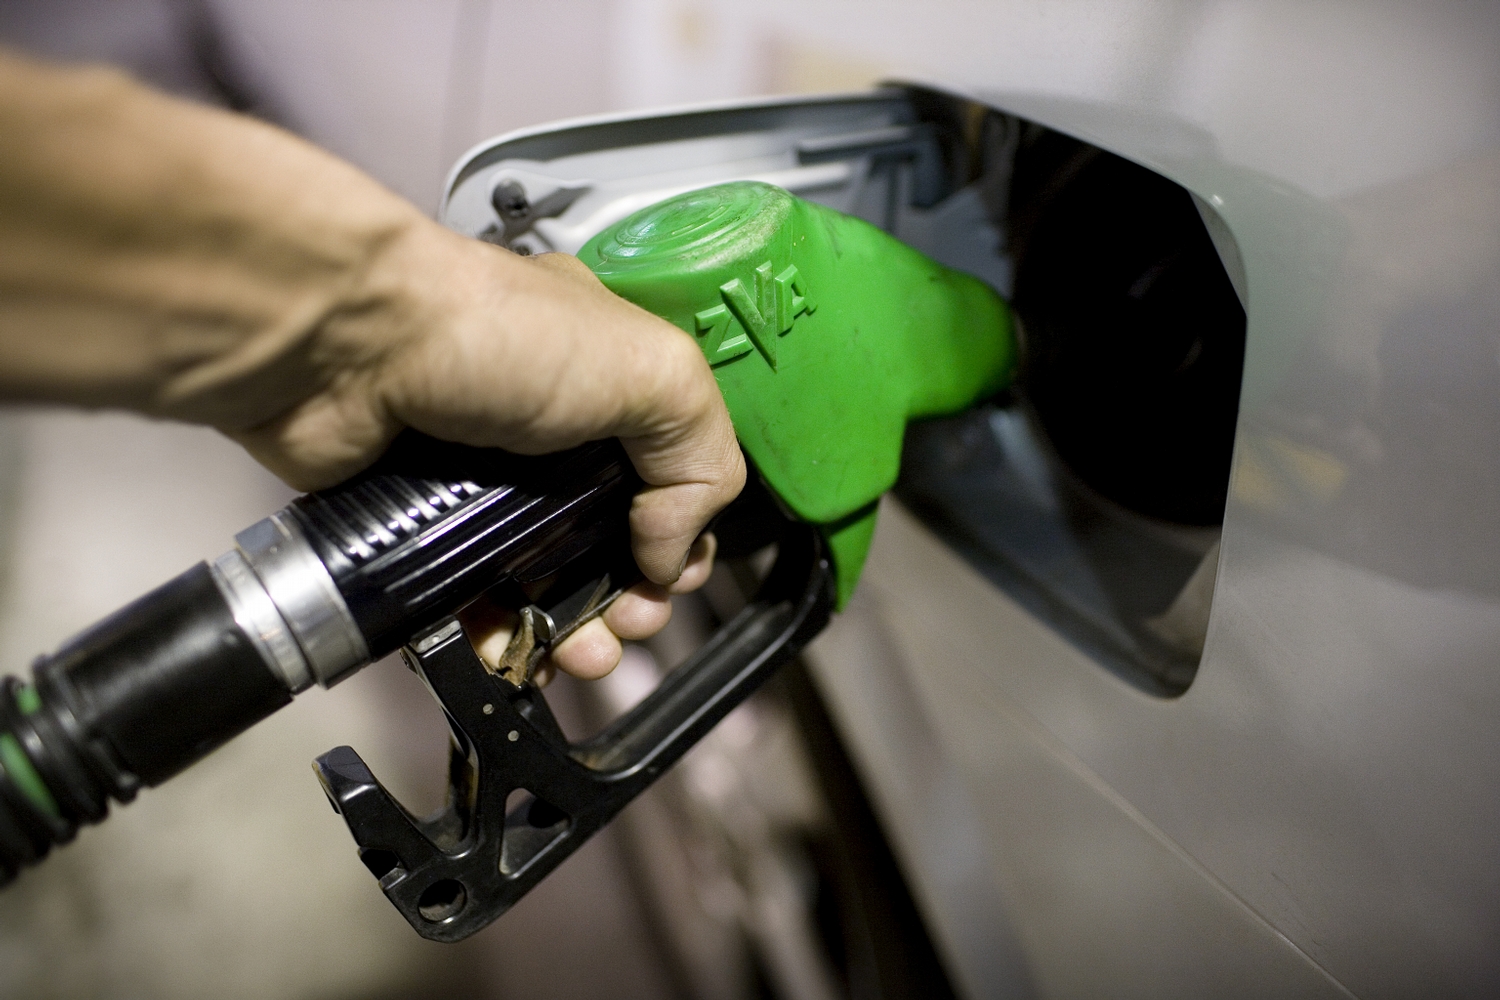  وضعیت بنزین در کشور اوضاع مناسبی ندارد 